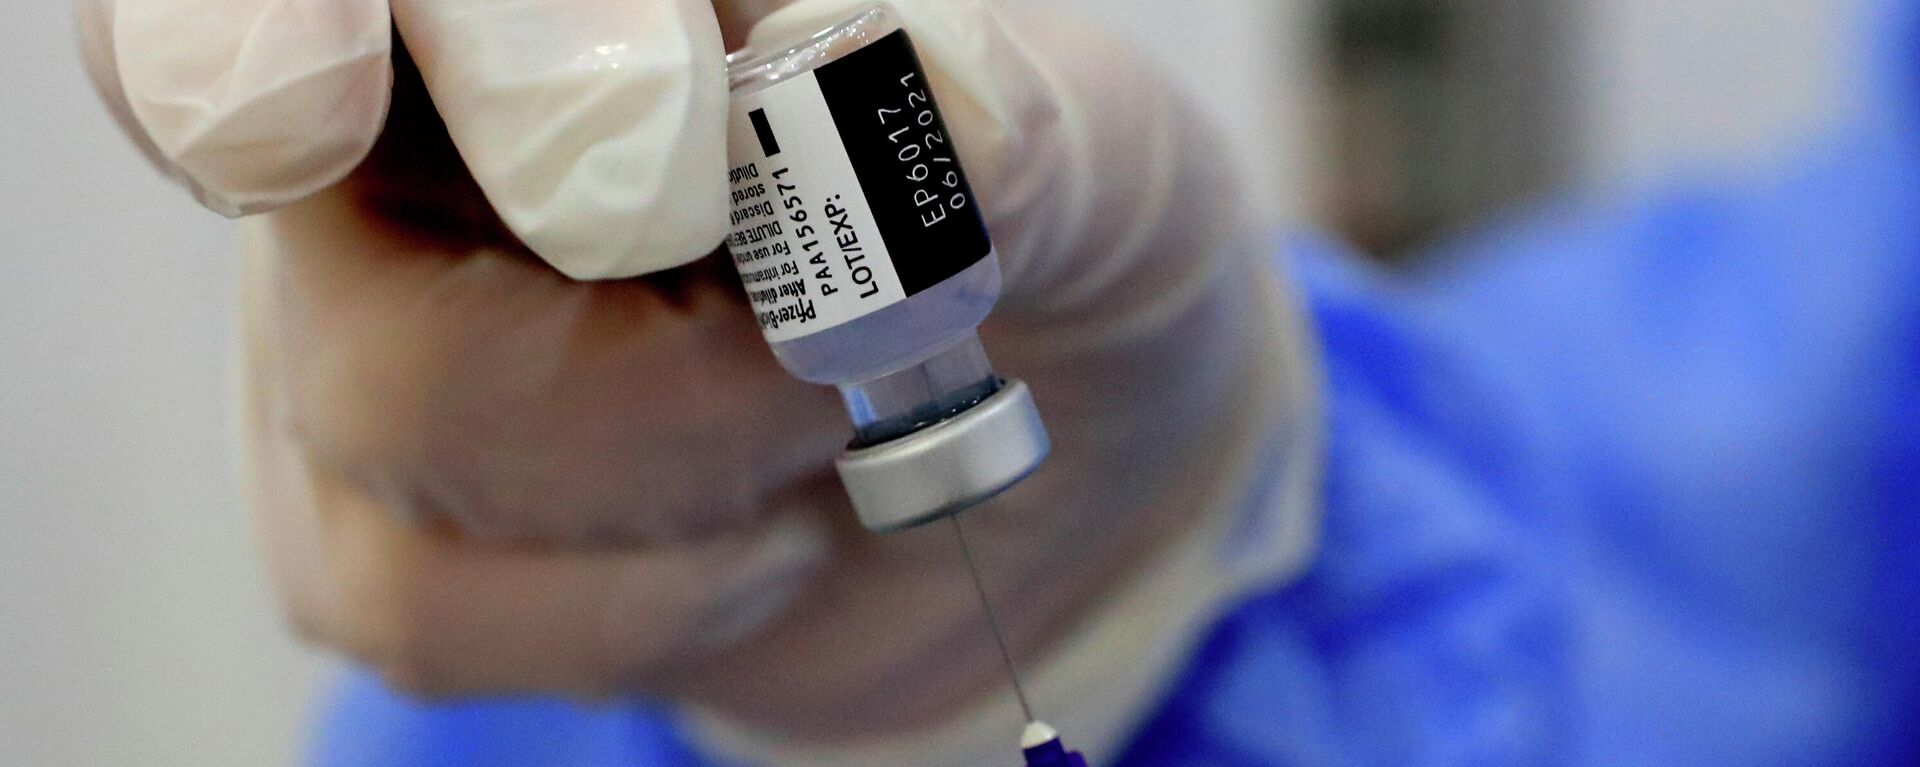 Una enfermera prepara una jeringa de la vacuna contra el coronavirus de Pfizer-BioNTech COVID-19 durante una campaña de vacunación en Beirut, Líbano, 16 de febrero de 2021. - Sputnik Mundo, 1920, 16.02.2021